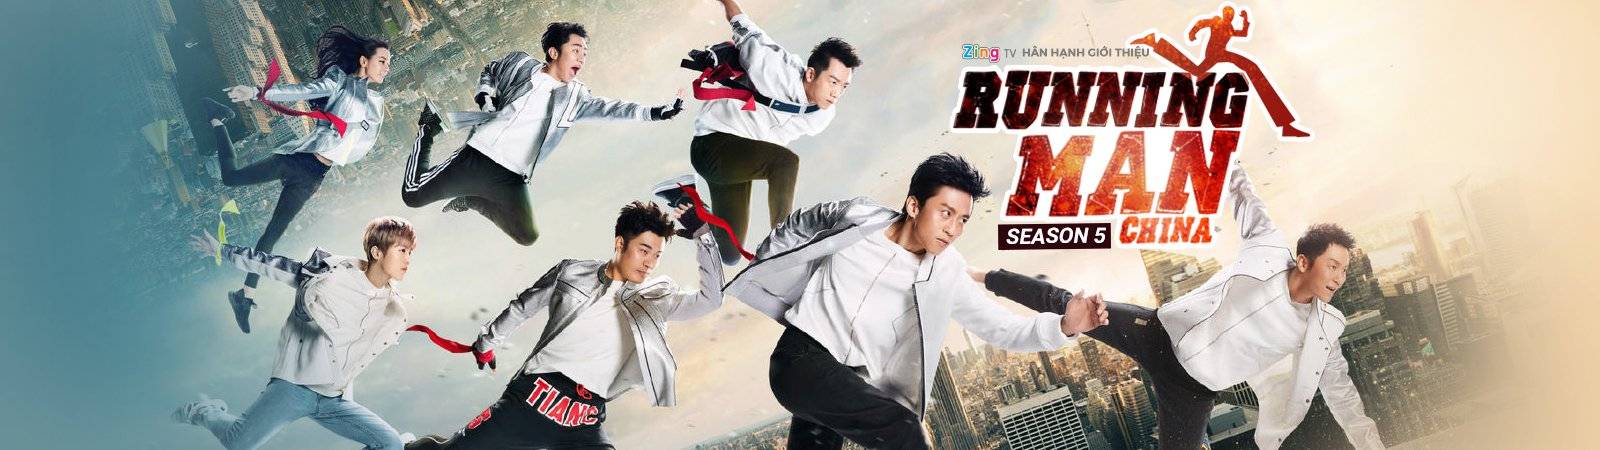 Xem Phim Running Man Bản Trung Quốc 5, Brother China Season 5 2017